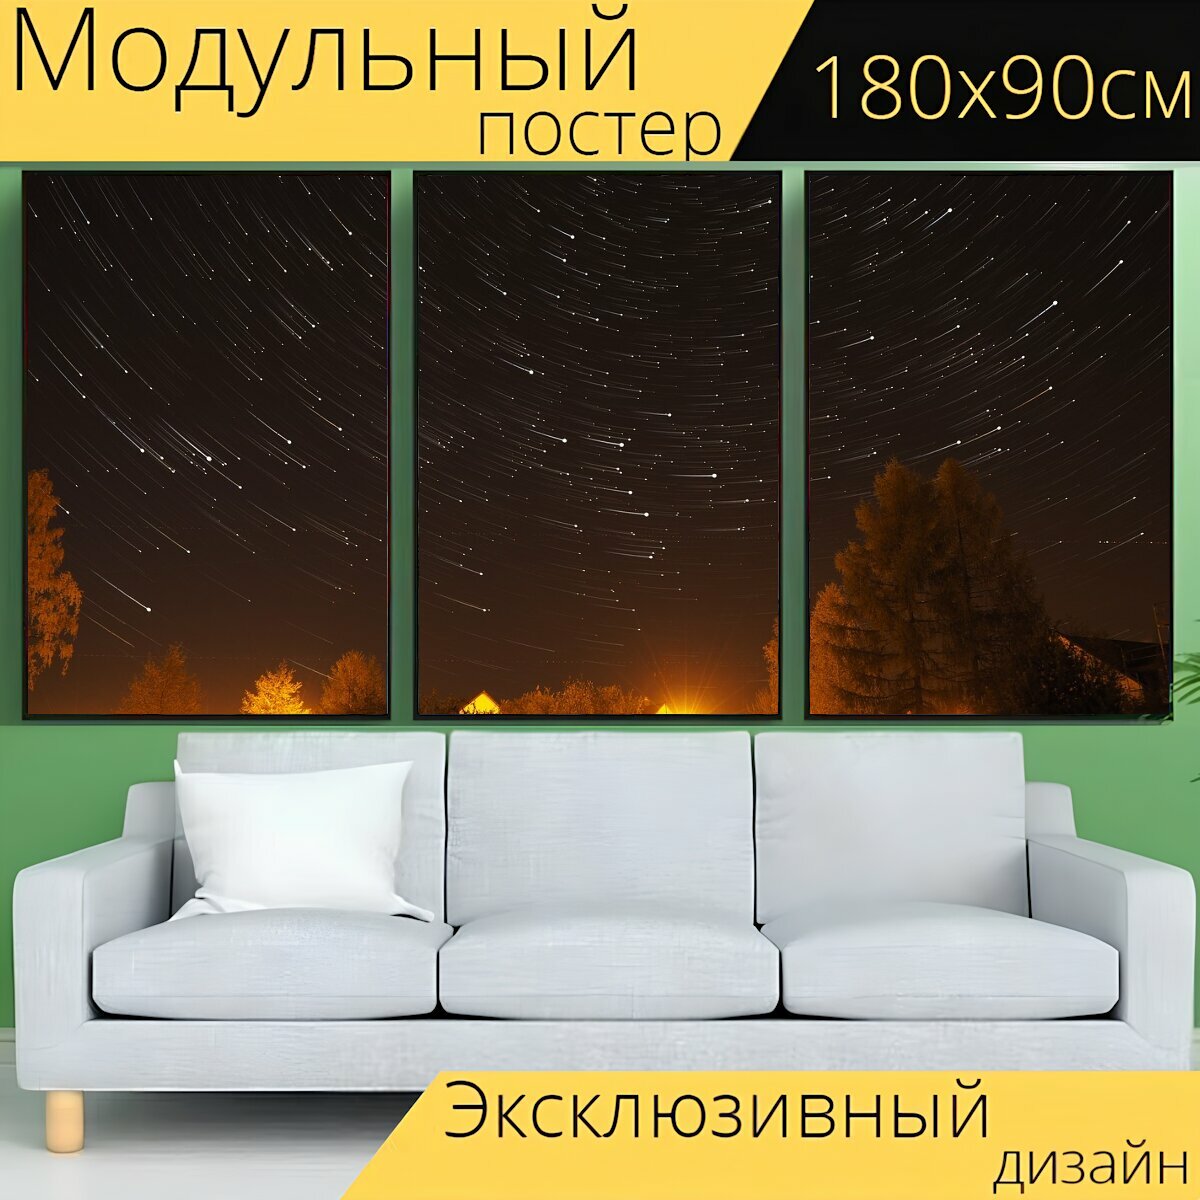 Модульный постер "Звезды, ночь, свет" 180 x 90 см. для интерьера